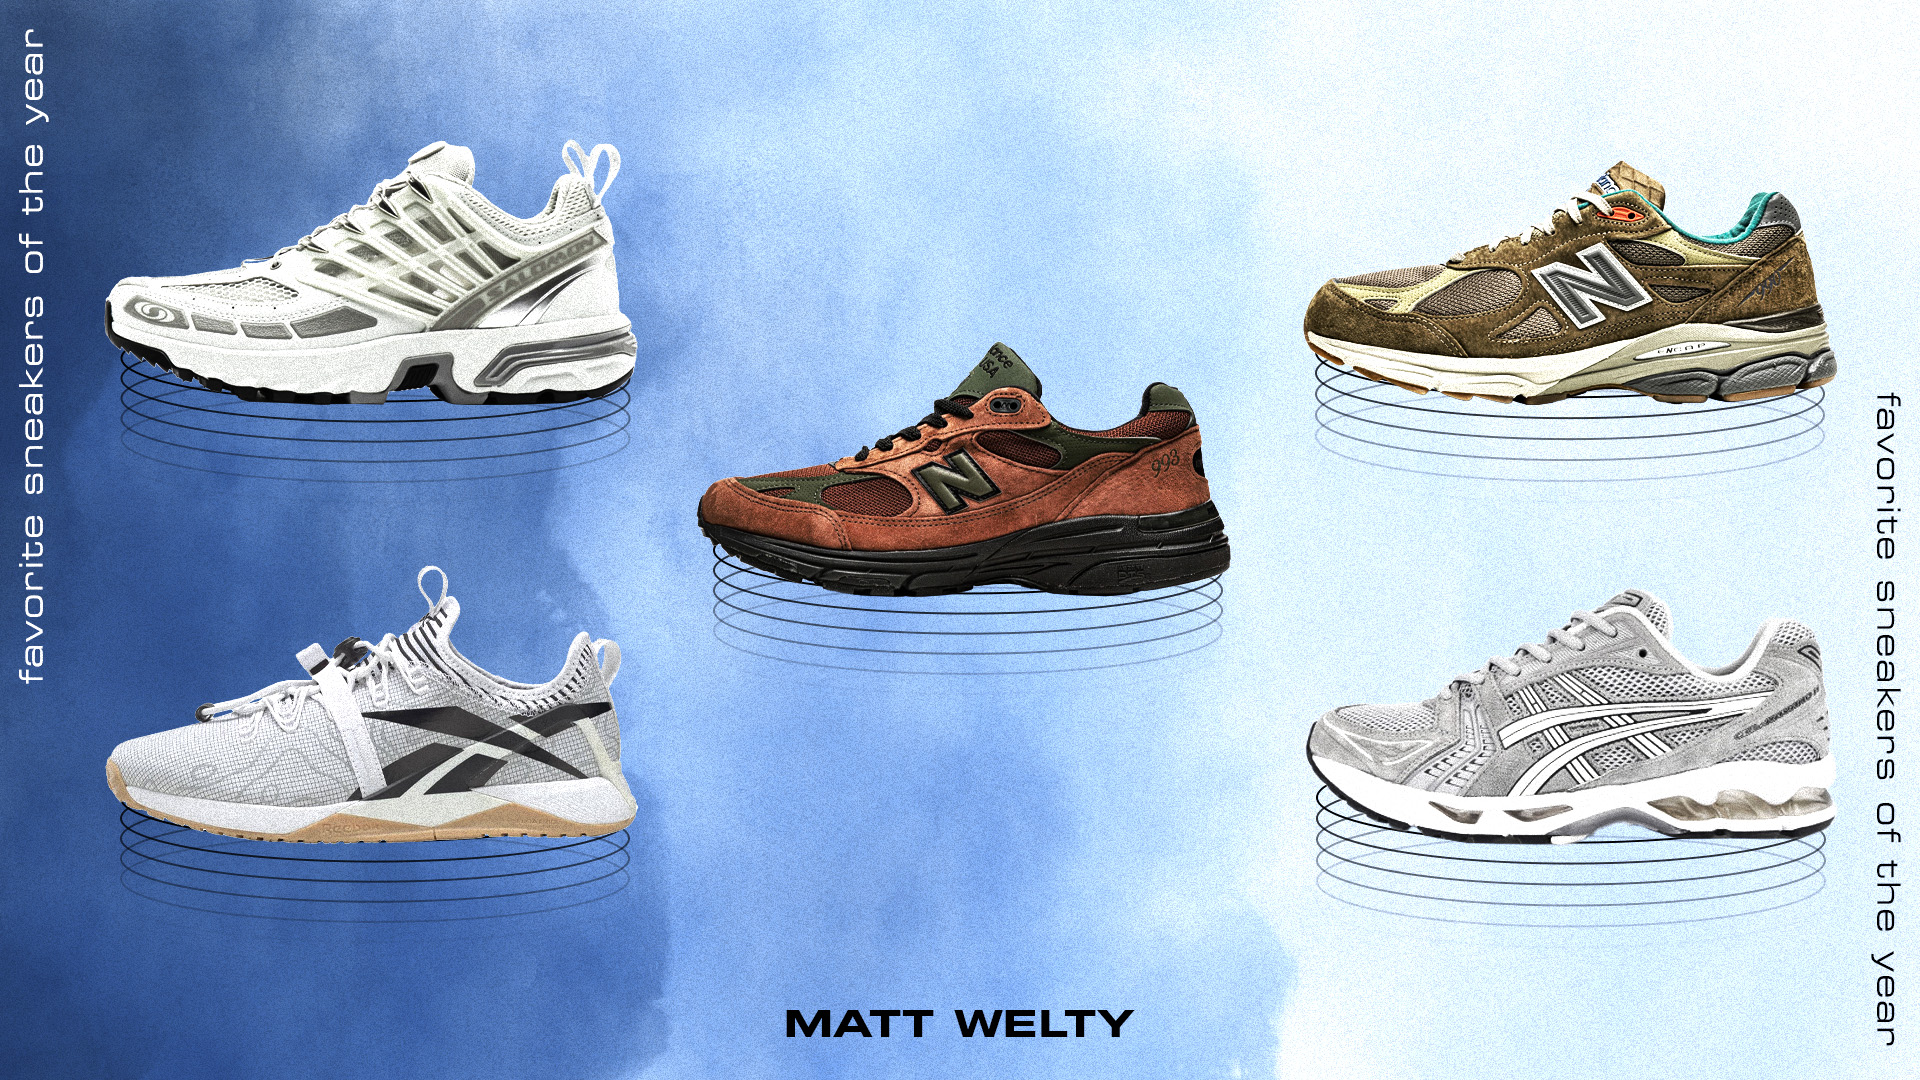 Matt Welty Favorite Sneakers 2021